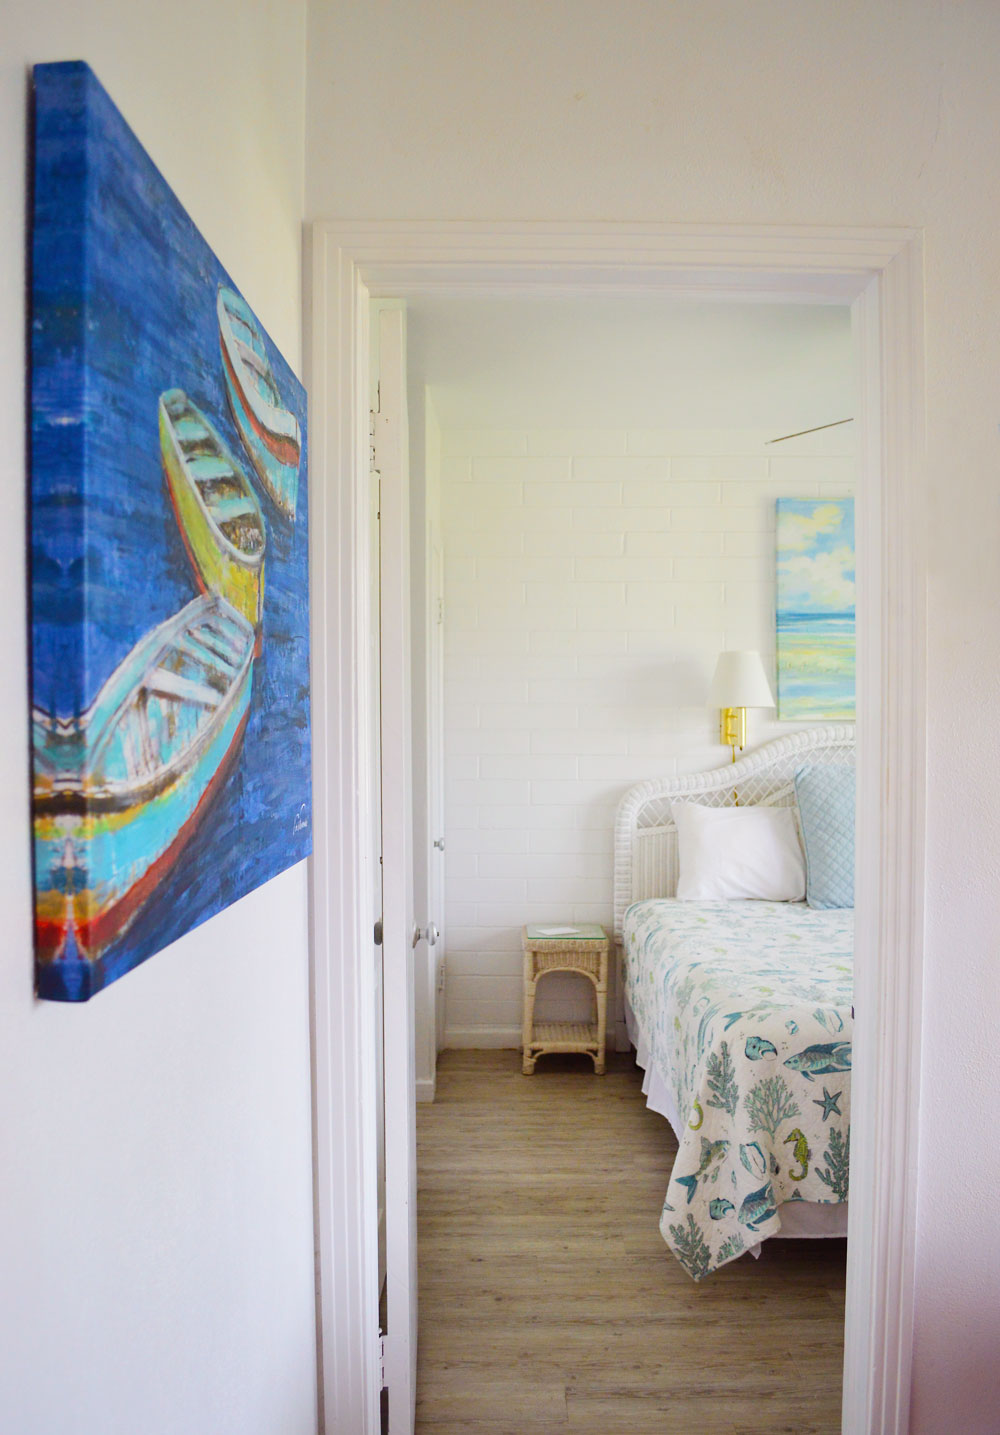 Peak of hallway art and Buena Vista Inn cozy bedroom